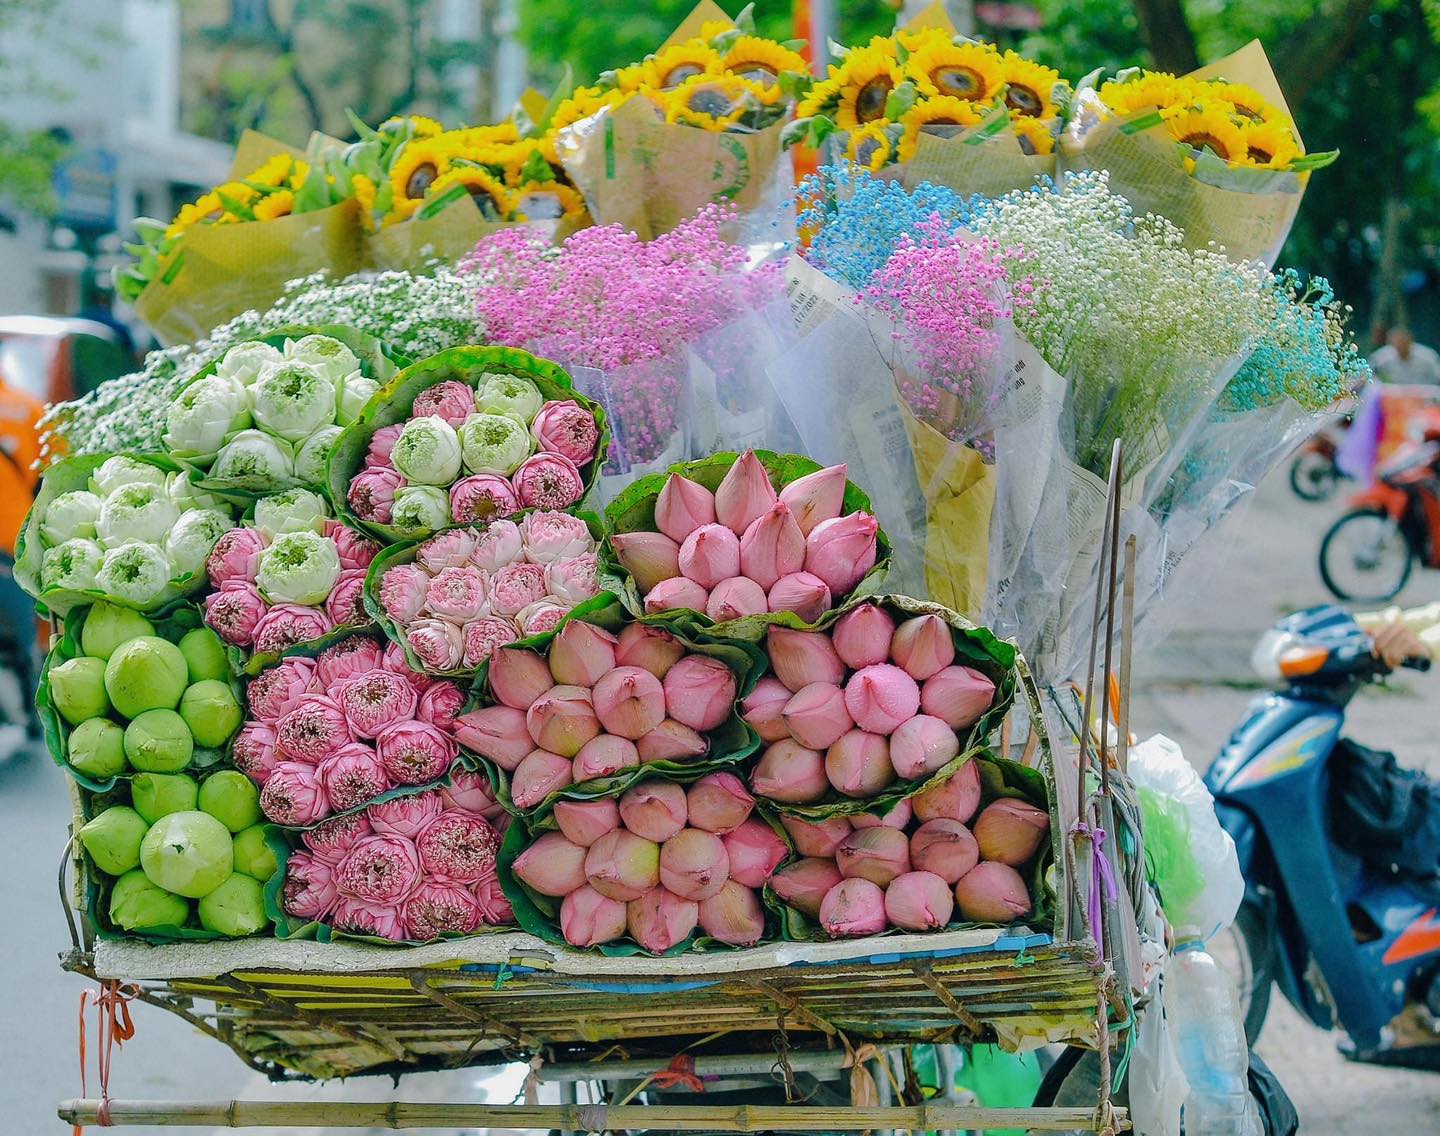 Cộng đồng mạng chia sẻ sự mê mẩn những gánh hoa trên phố Hà Nội: "Những điều bình bị mà thành phố khác không có"